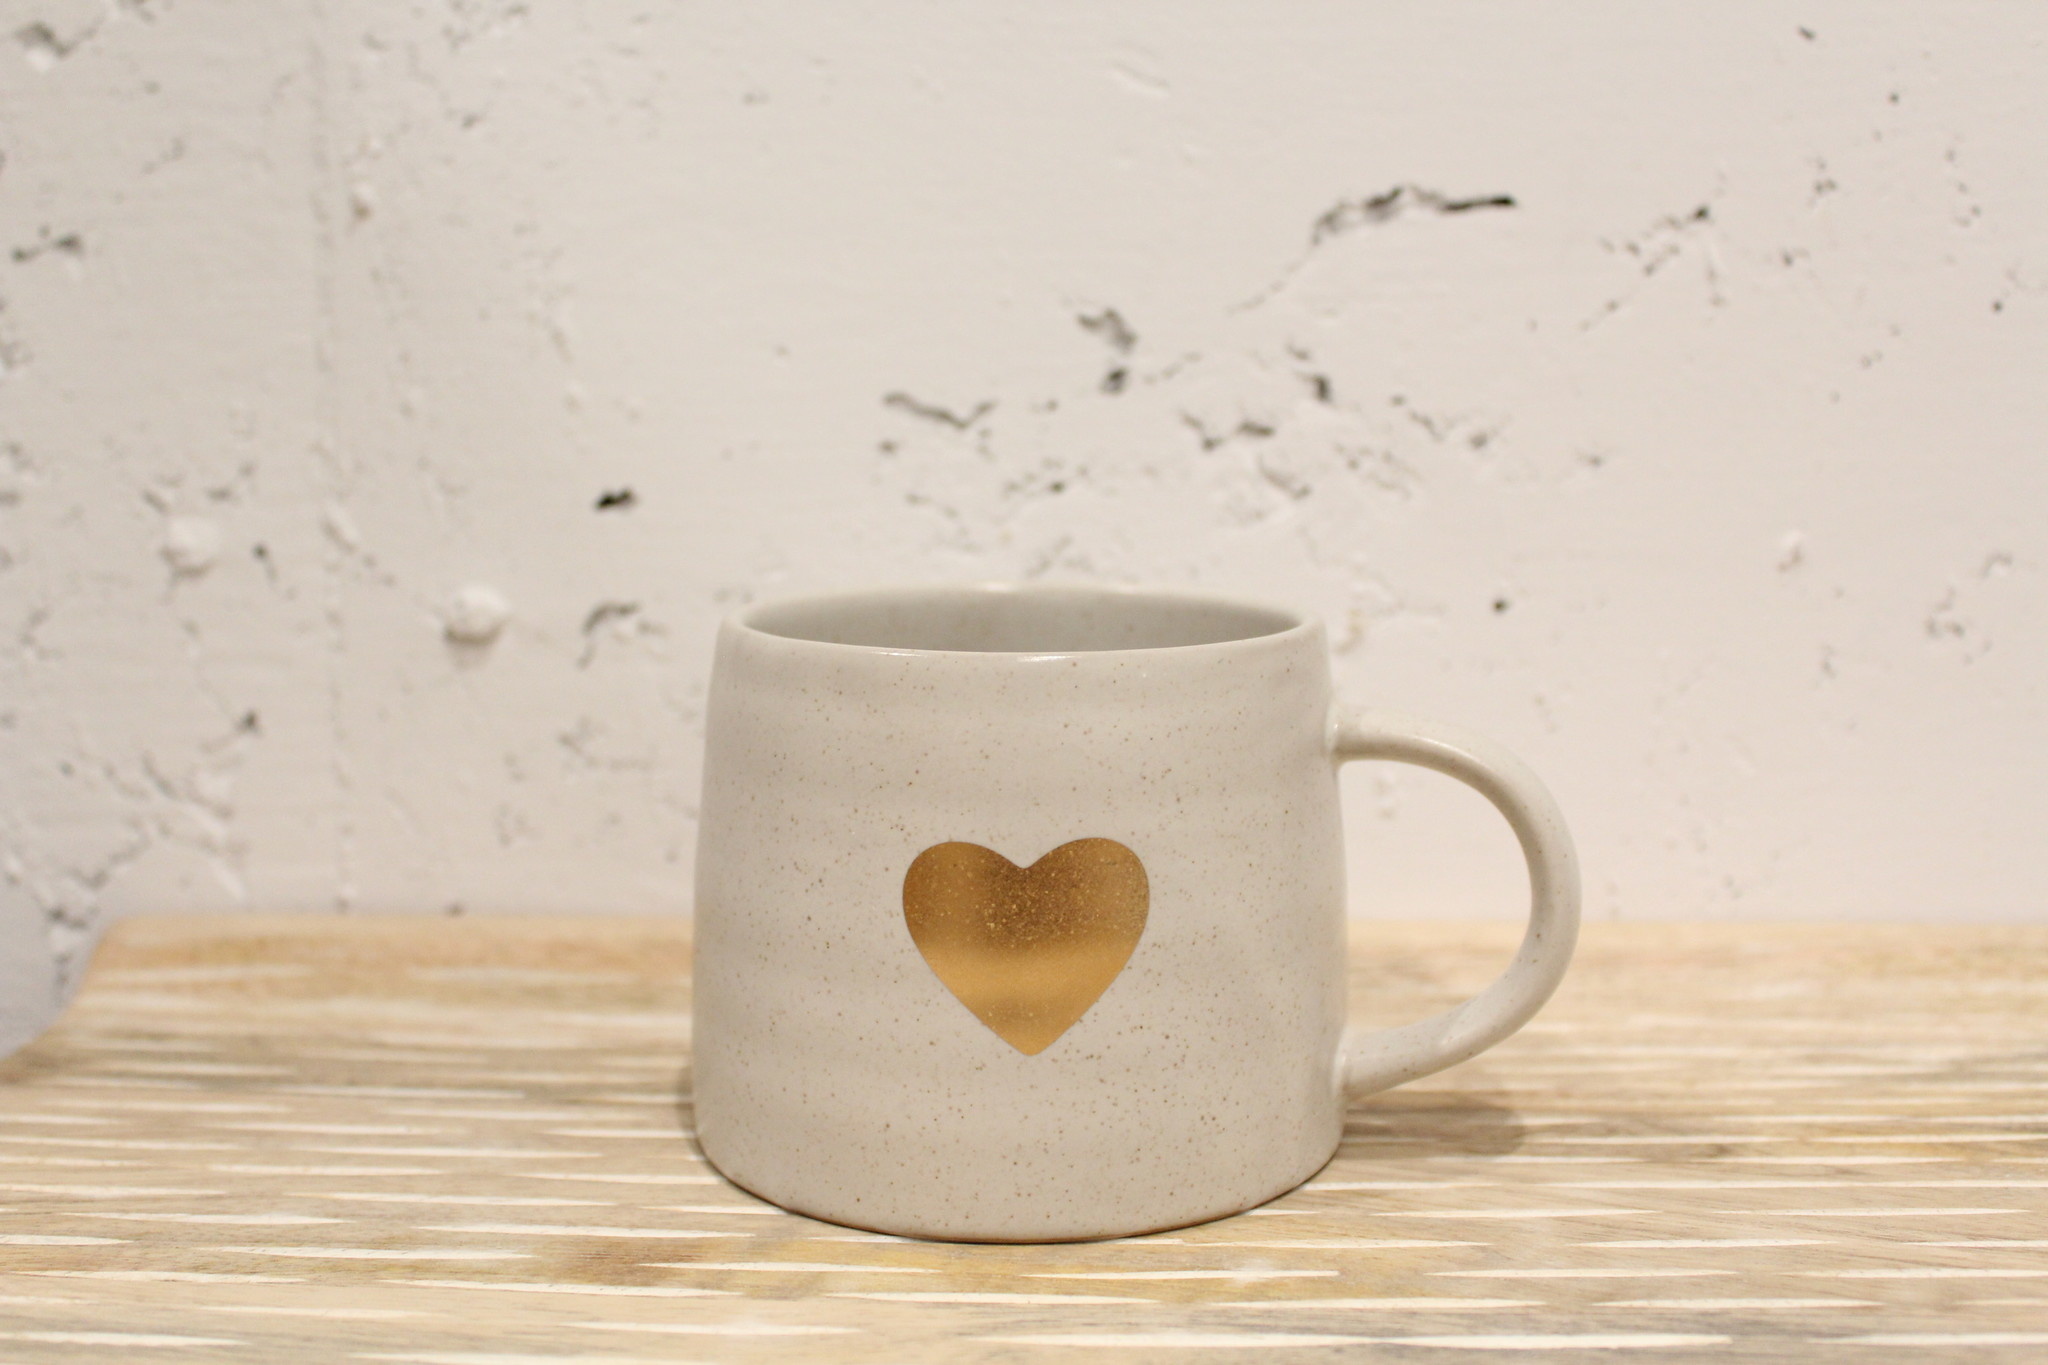 Indaba Trading Co. Gold Heart Mug, White